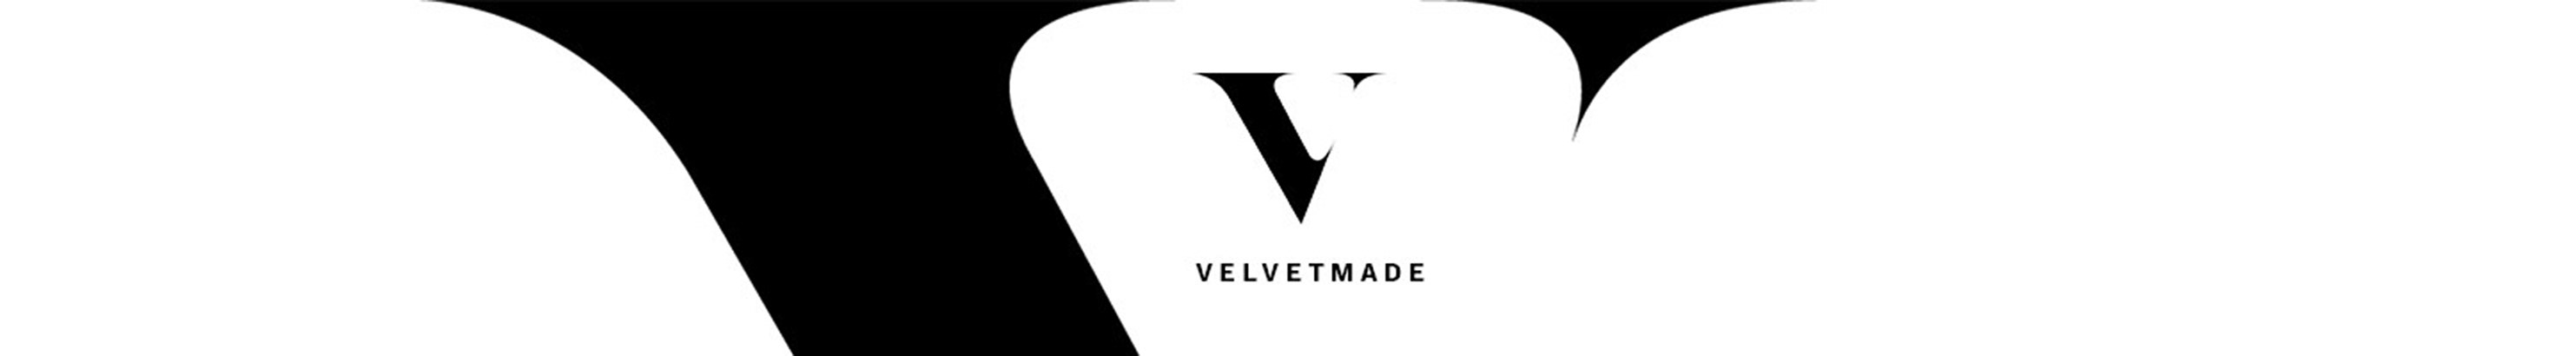 Velvet made's profile banner